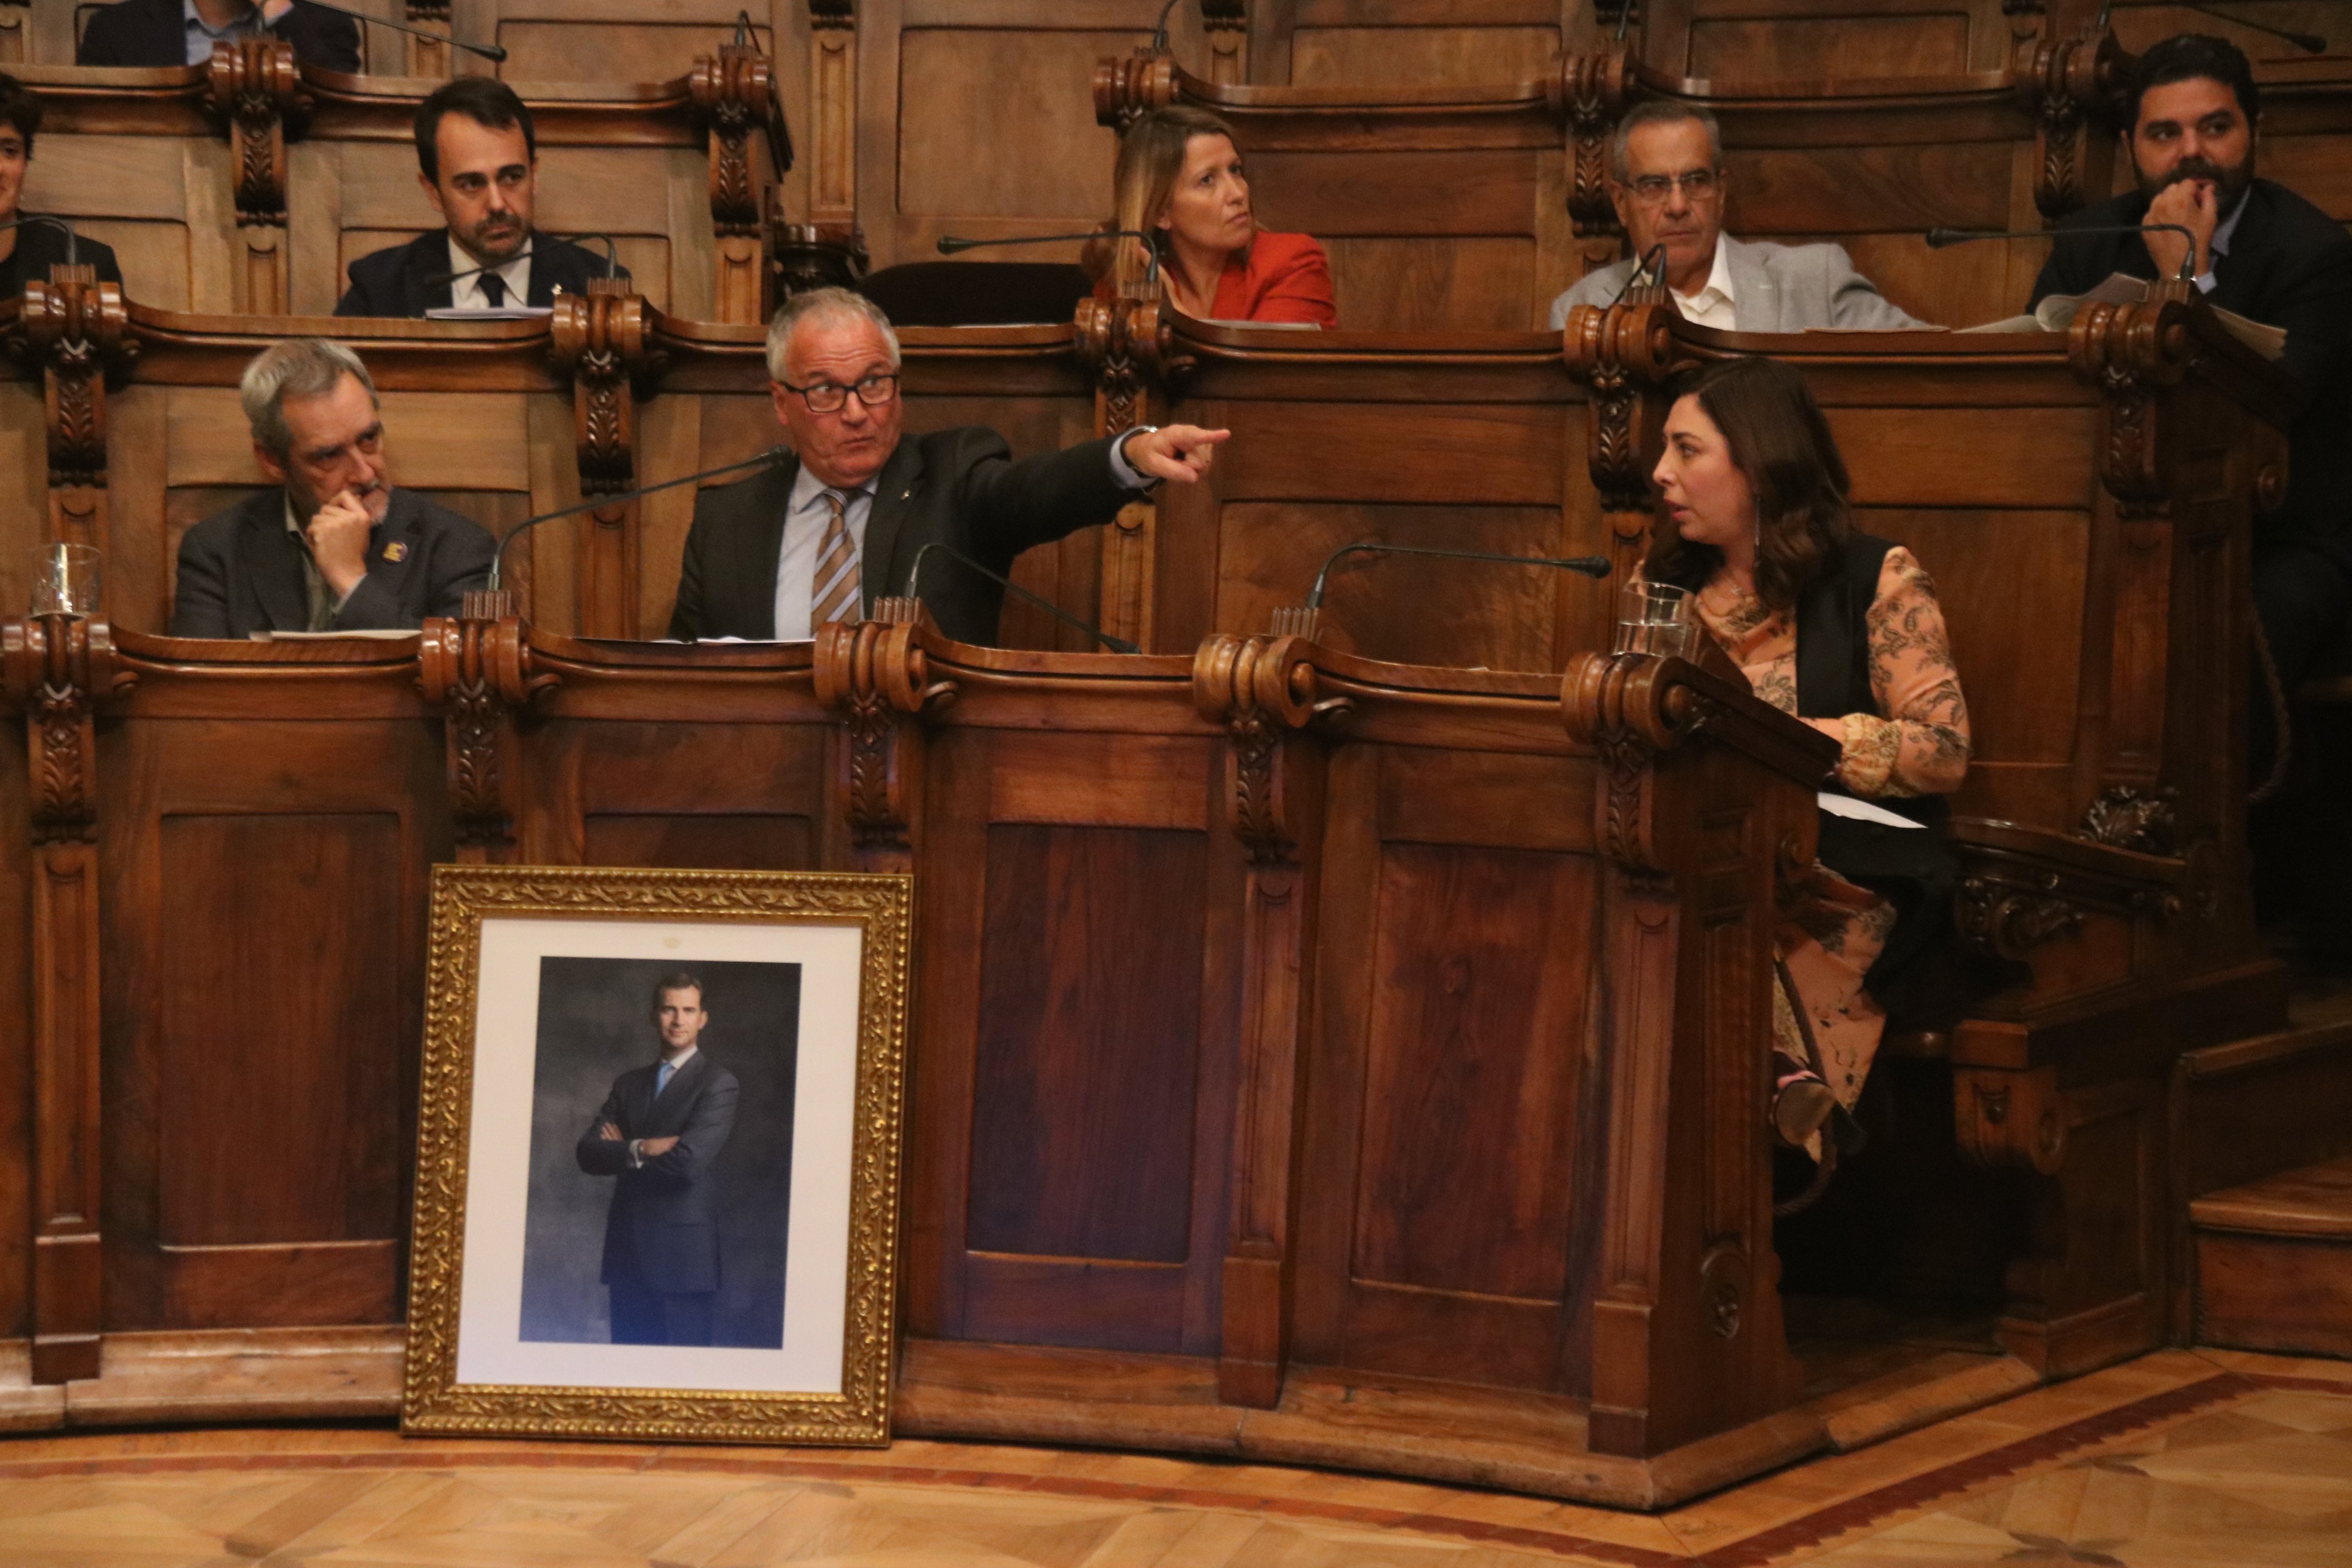 Bou insisteix a Colau amb el retrat de Felip VI: "No és política, és legalitat"